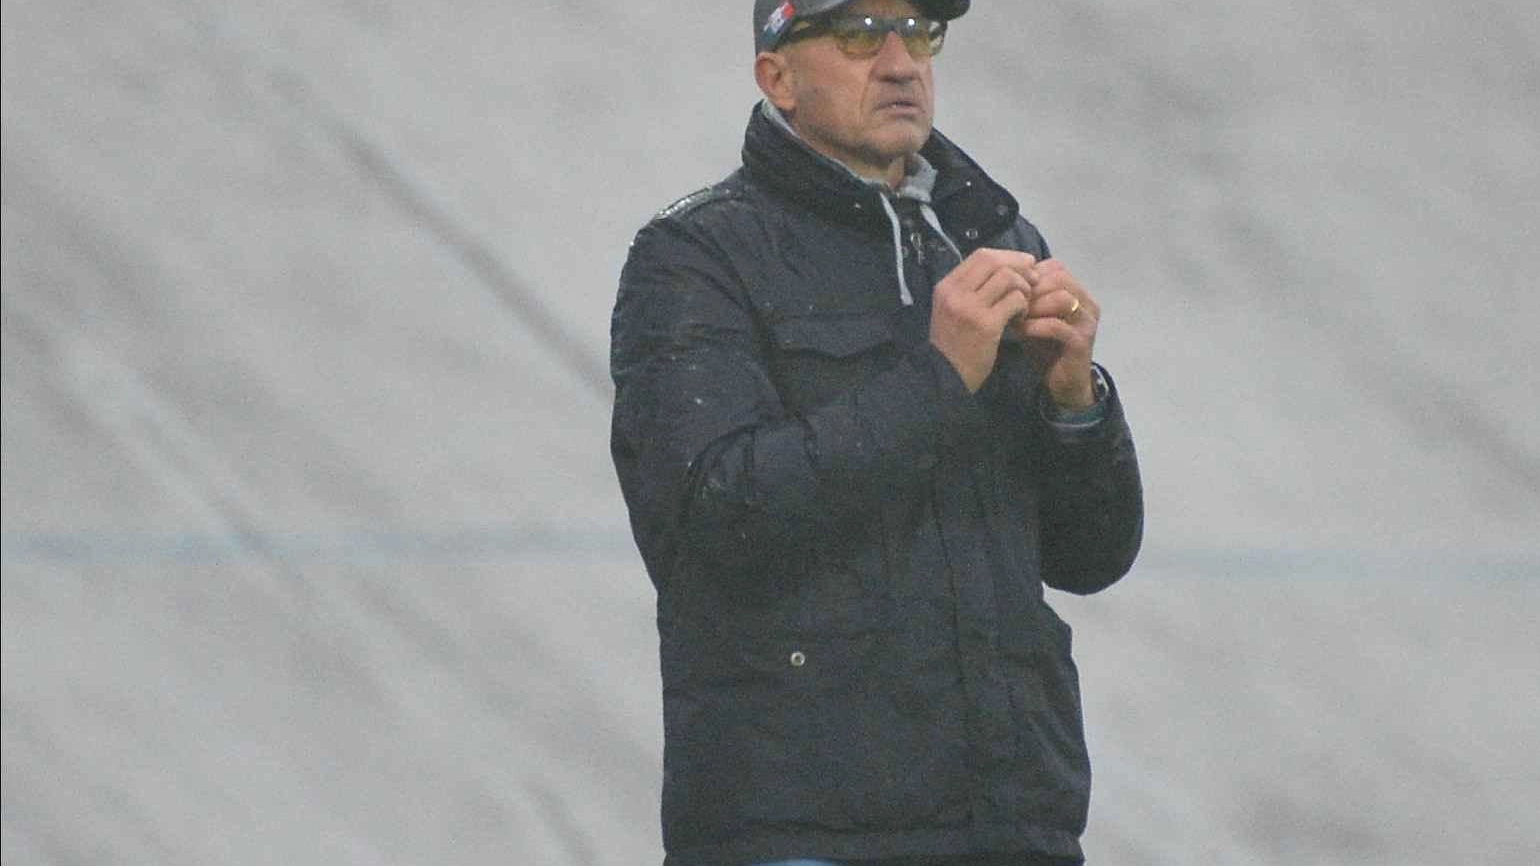 Calcio, Serie D: l’allenatore traccia le linee guida per la prossima stagione "Vogliamo costruire qualcosa che duri. Nessuno avrà il posto garantito"